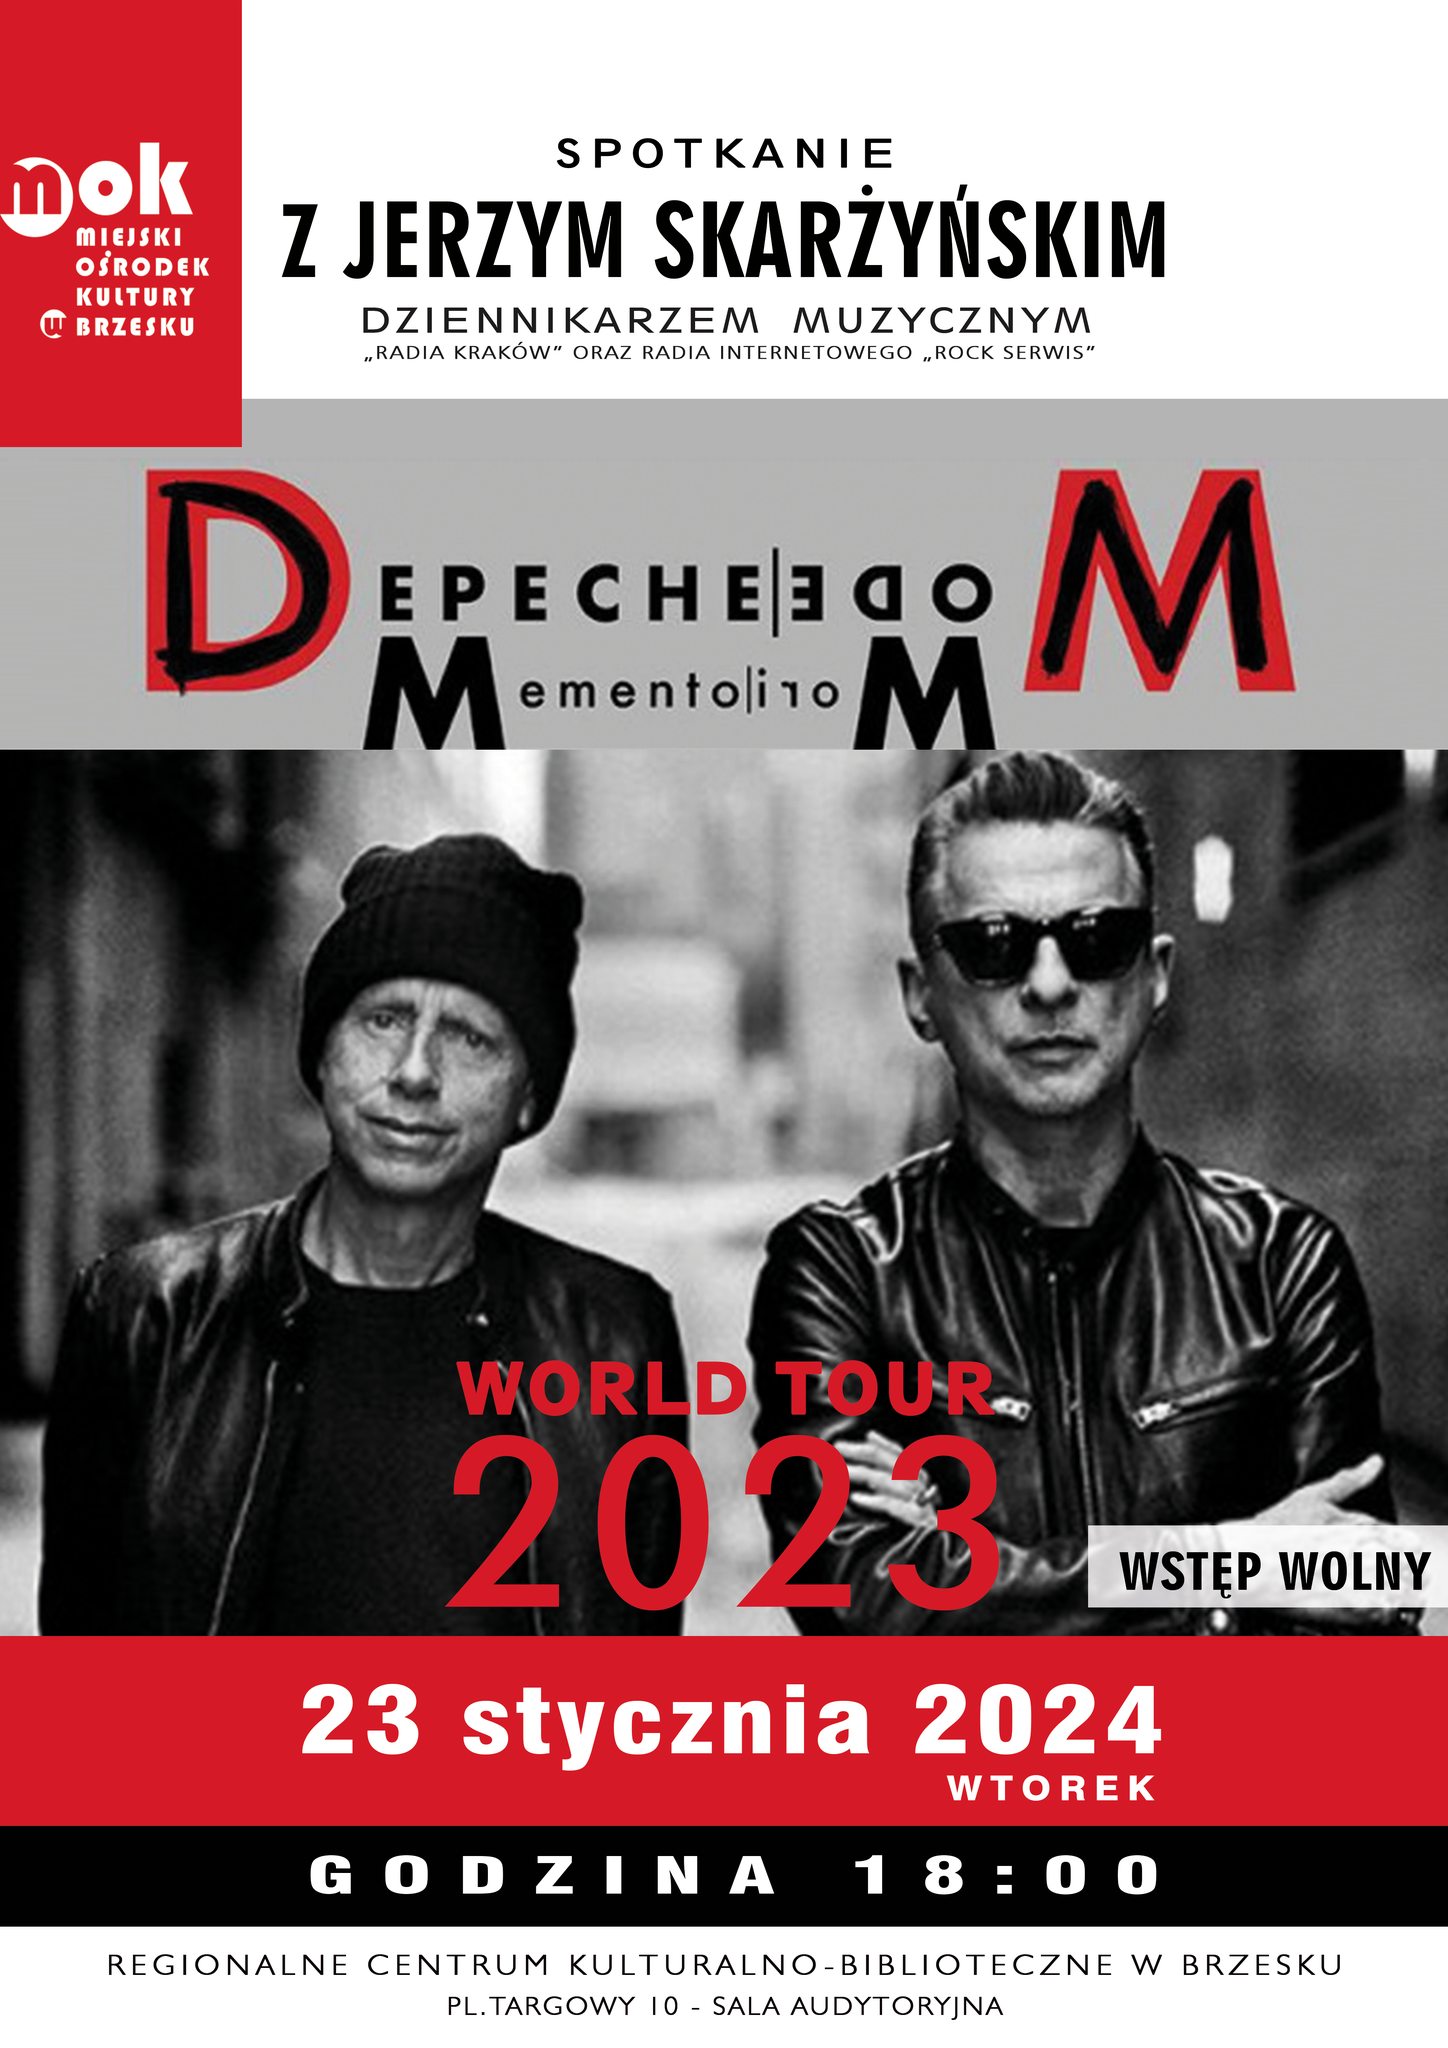 Spotkanie z Jerzym Skarzyńskim – Depeche Mode: Memento Mori – 23 stycznia 2024